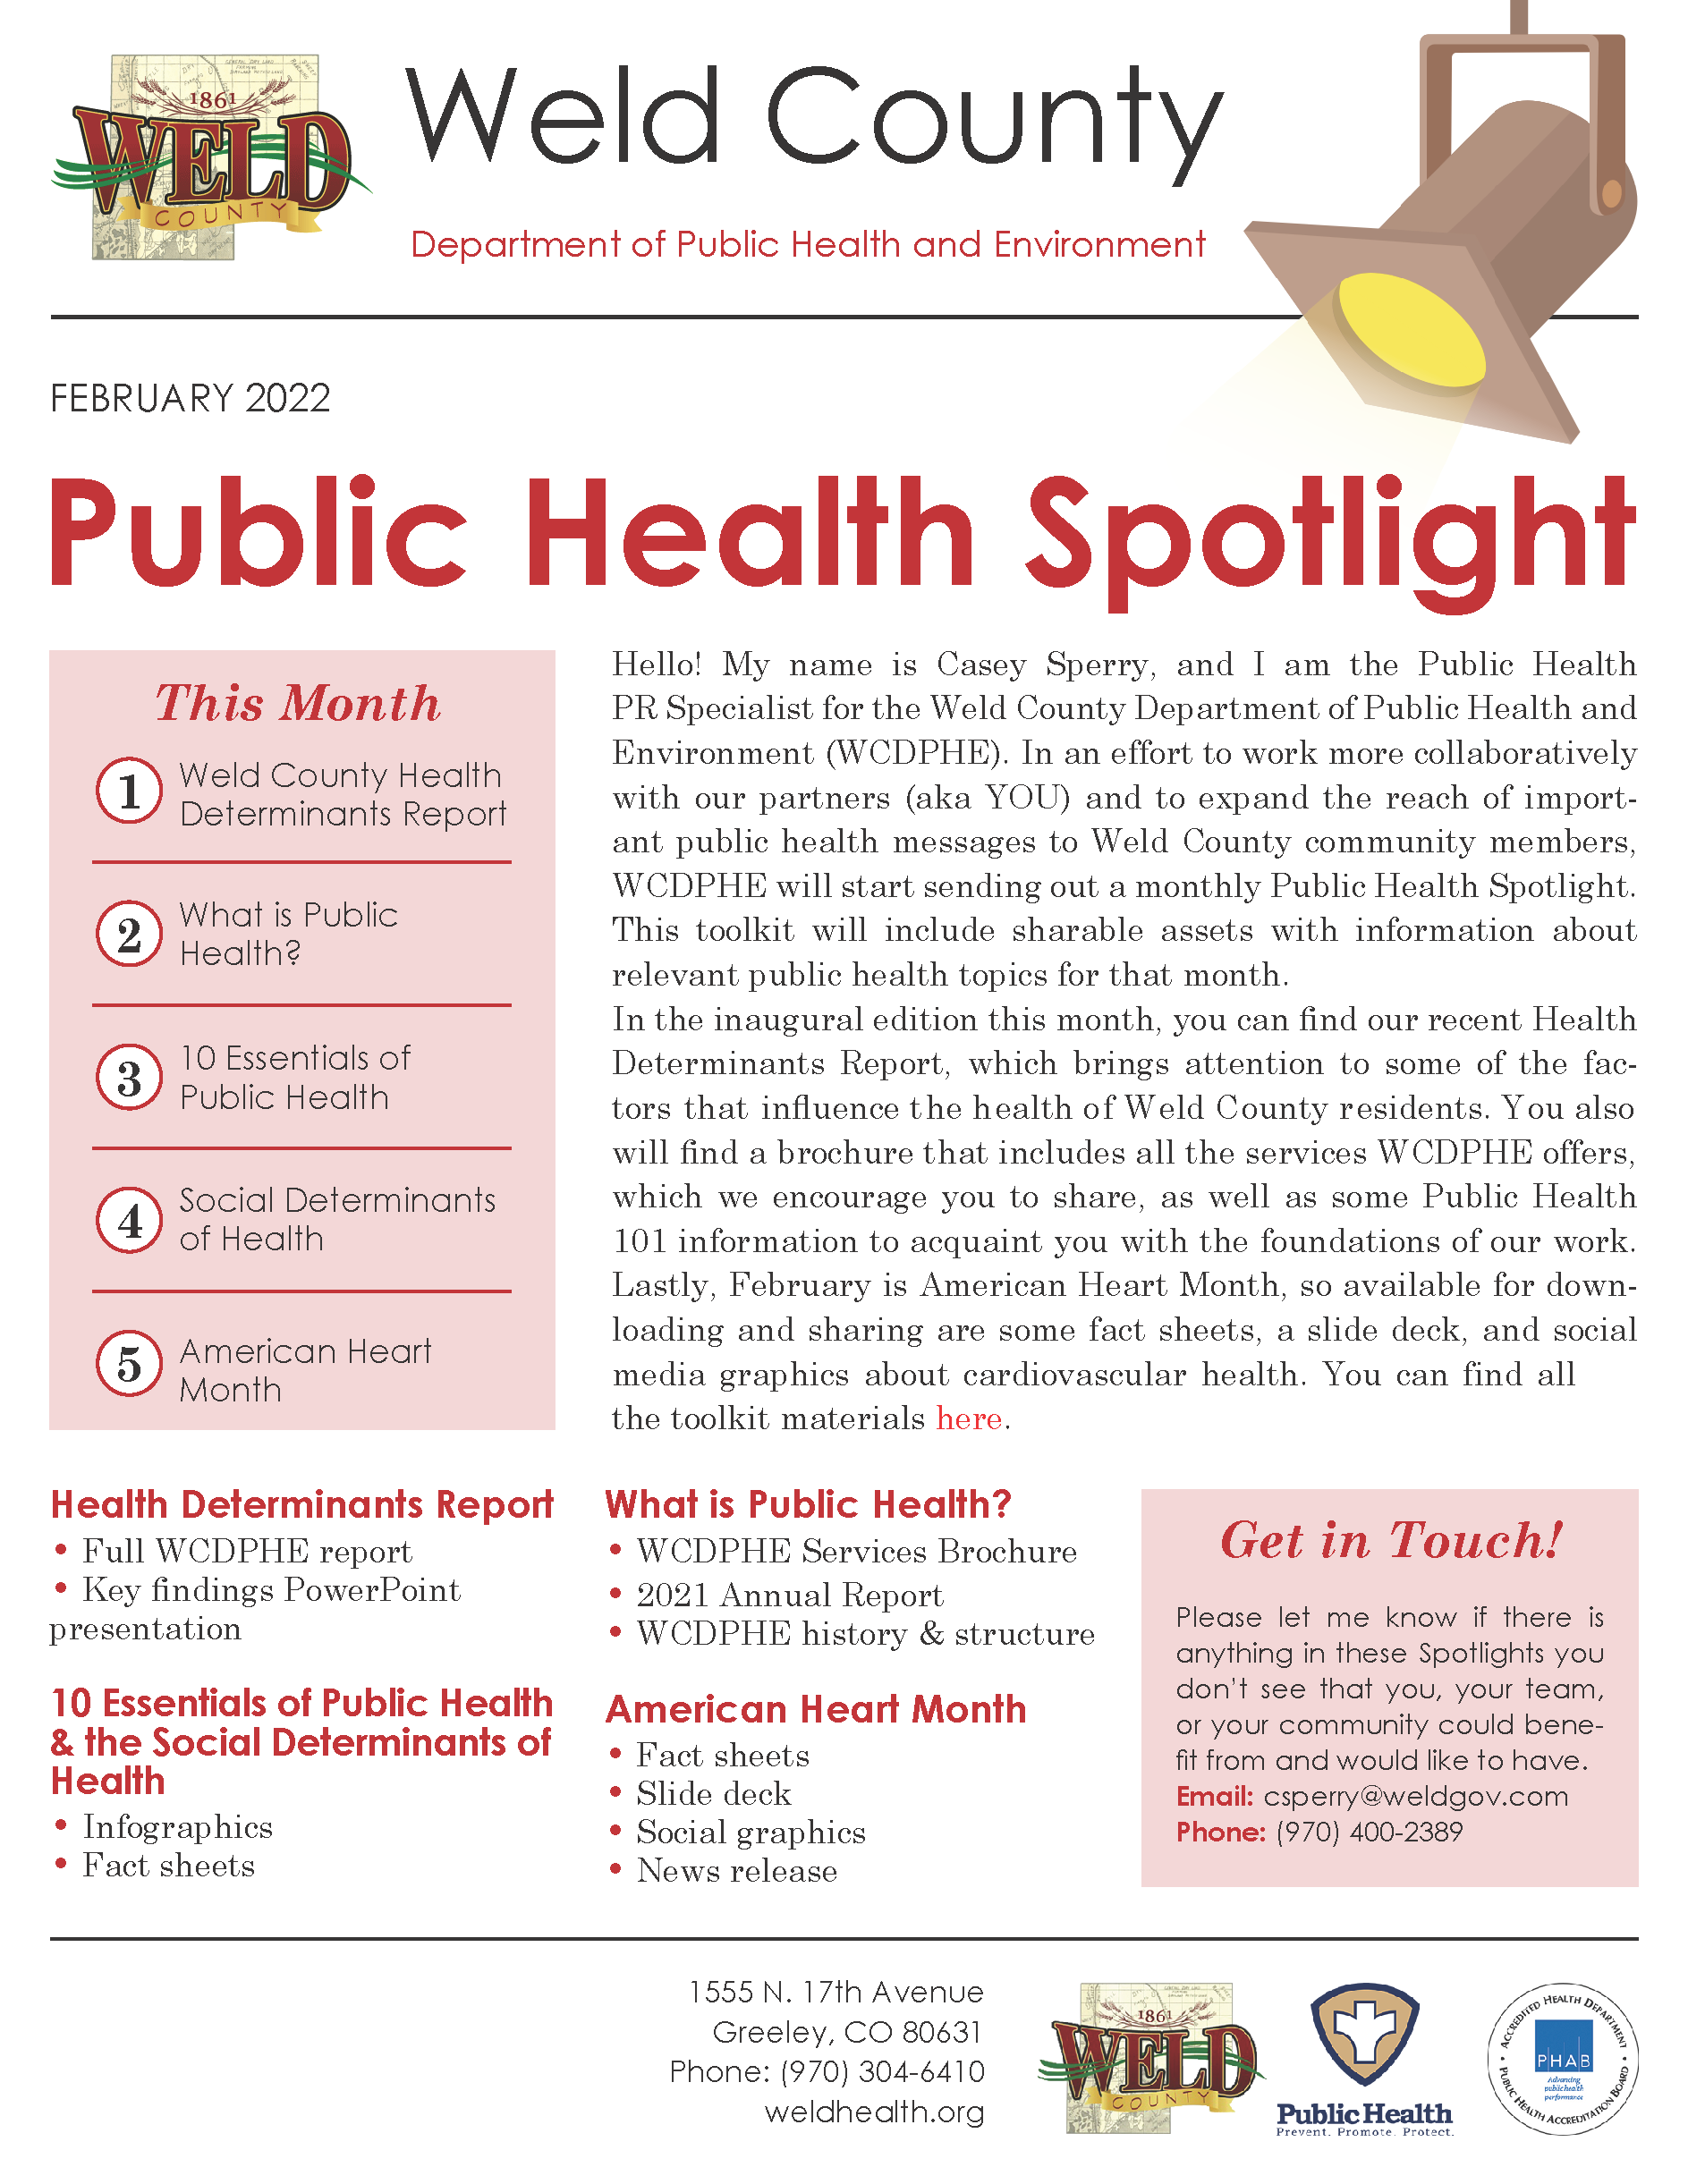 February 2022 Public Health Spotlight